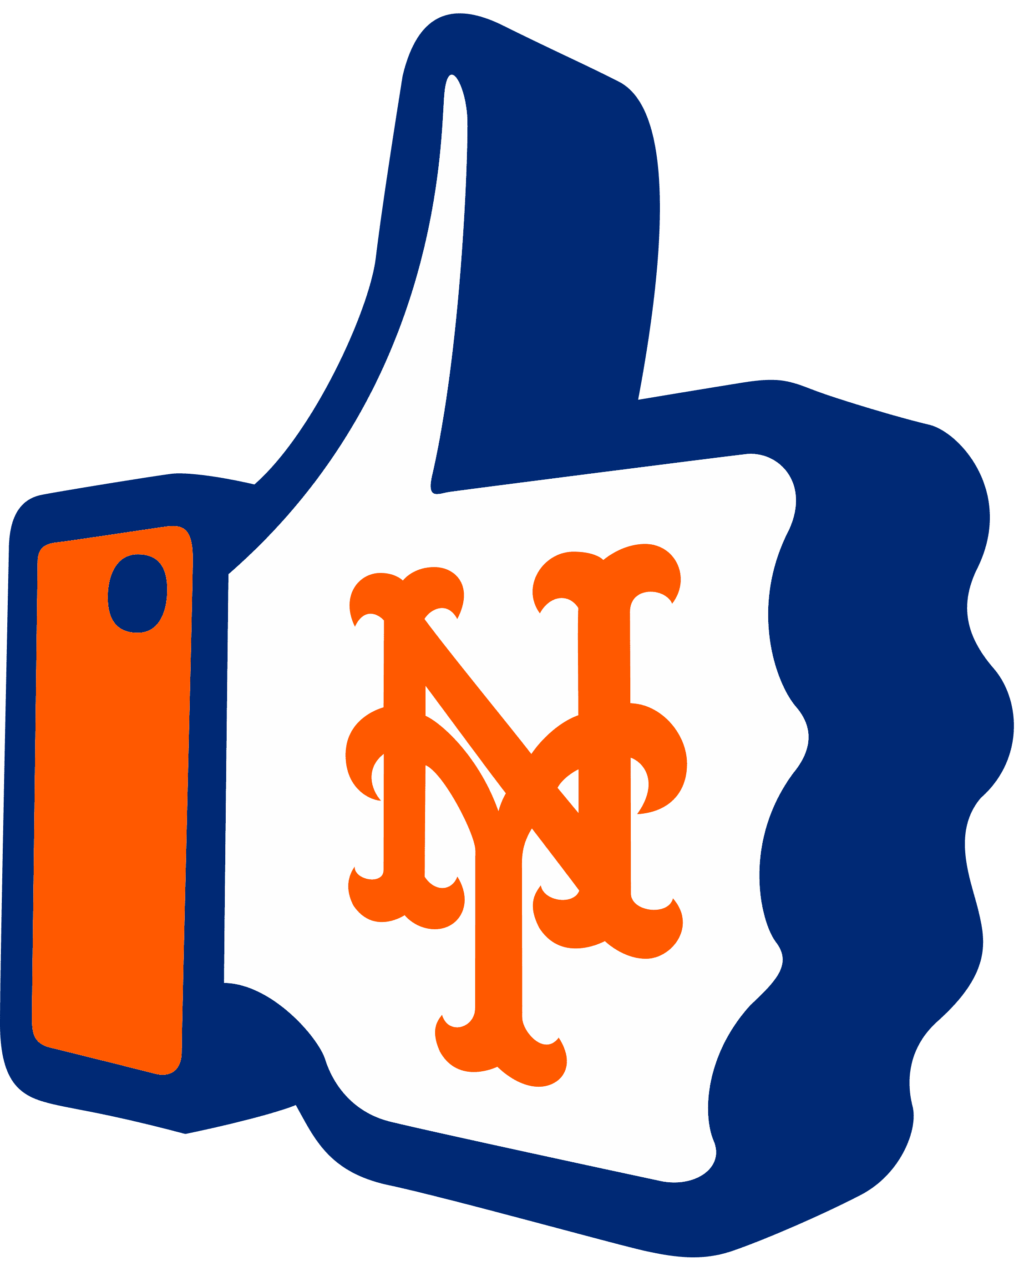 new york mets 16 MLB Logo New York Mets, New York Mets SVG, Vector New York Mets Clipart New York Mets Baseball Kit New York Mets, SVG, DXF, PNG, Baseball Logo Vector New York Mets EPS download MLB-files for silhouette, New York Mets files for clipping.